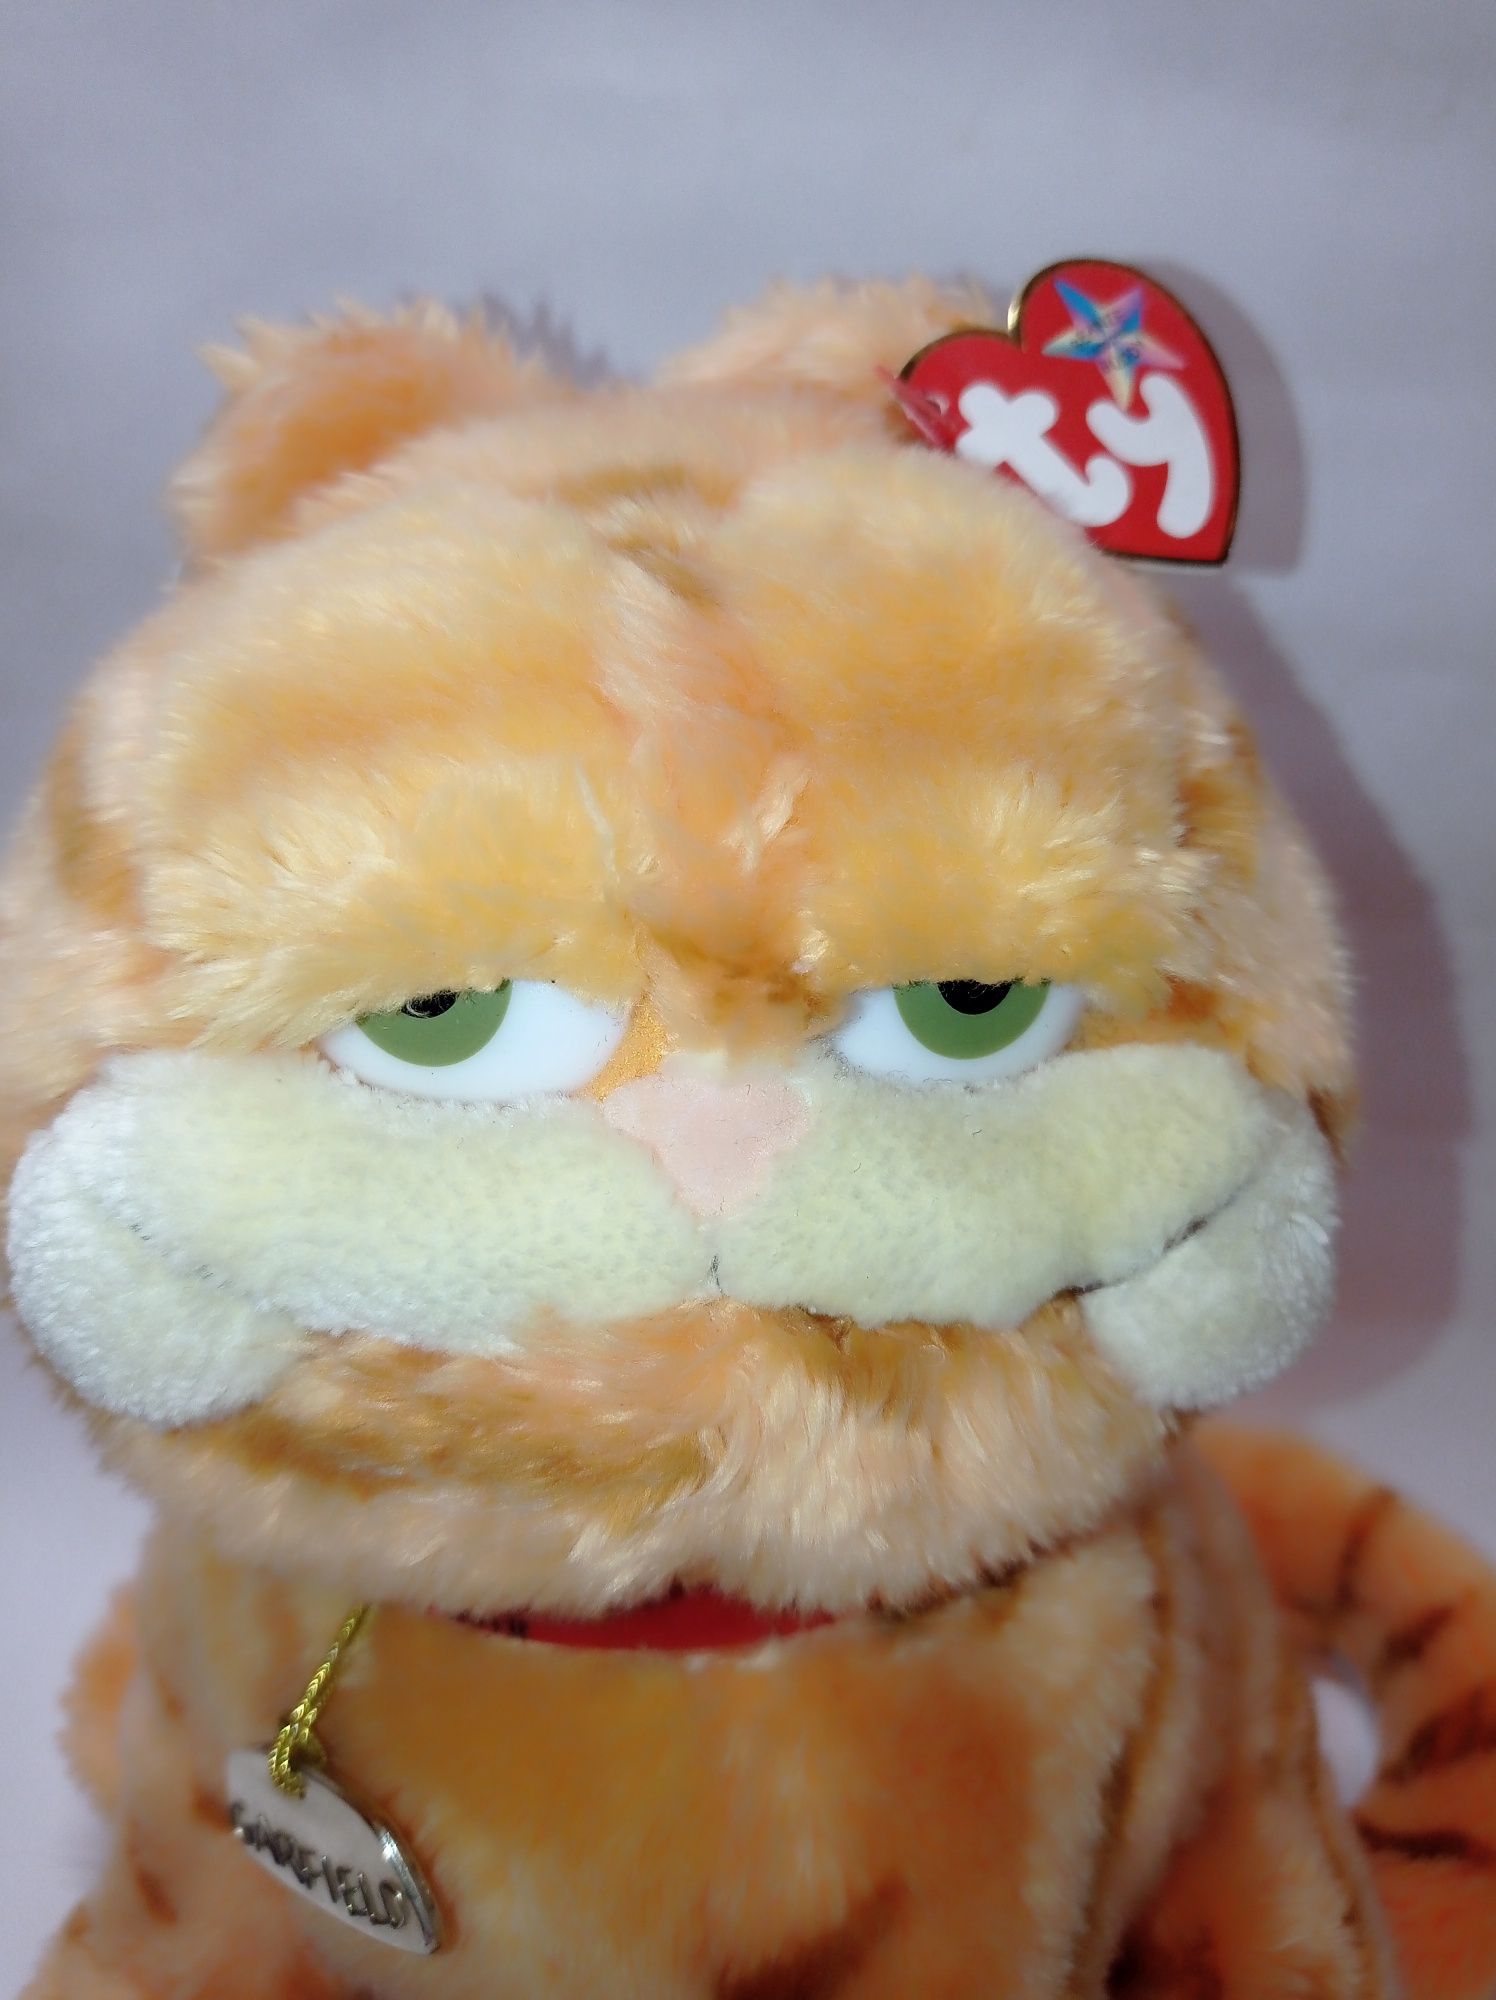 Мягкая игрушка кот Гарфилд Garfield Ty 2004